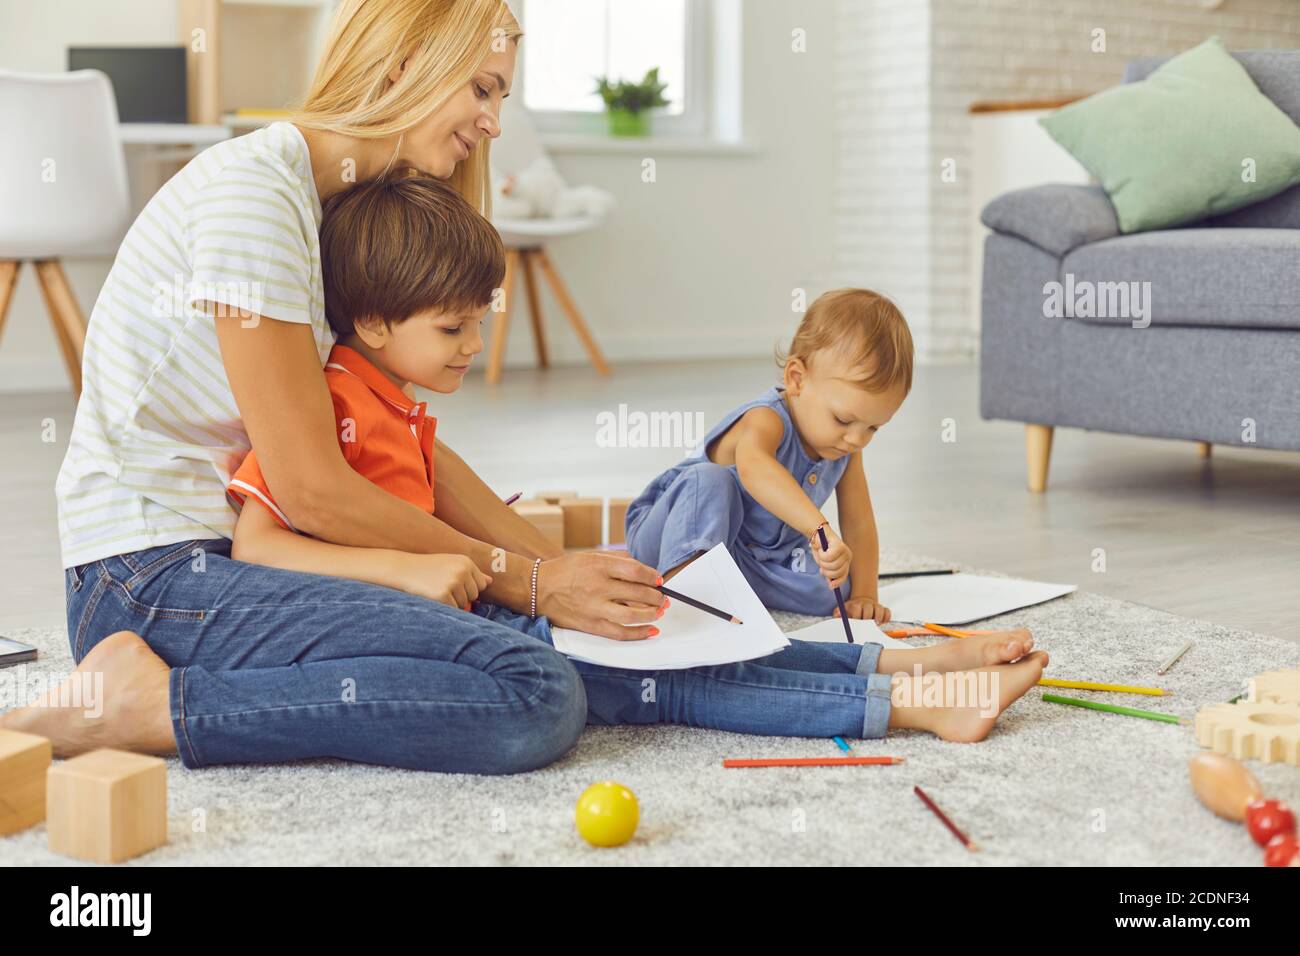 Die junge Mutter lehrt ihre beiden kleinen Kinder, mit Buntstiften zu zeichnen, während sie im Zimmer sitzt. Stockfoto